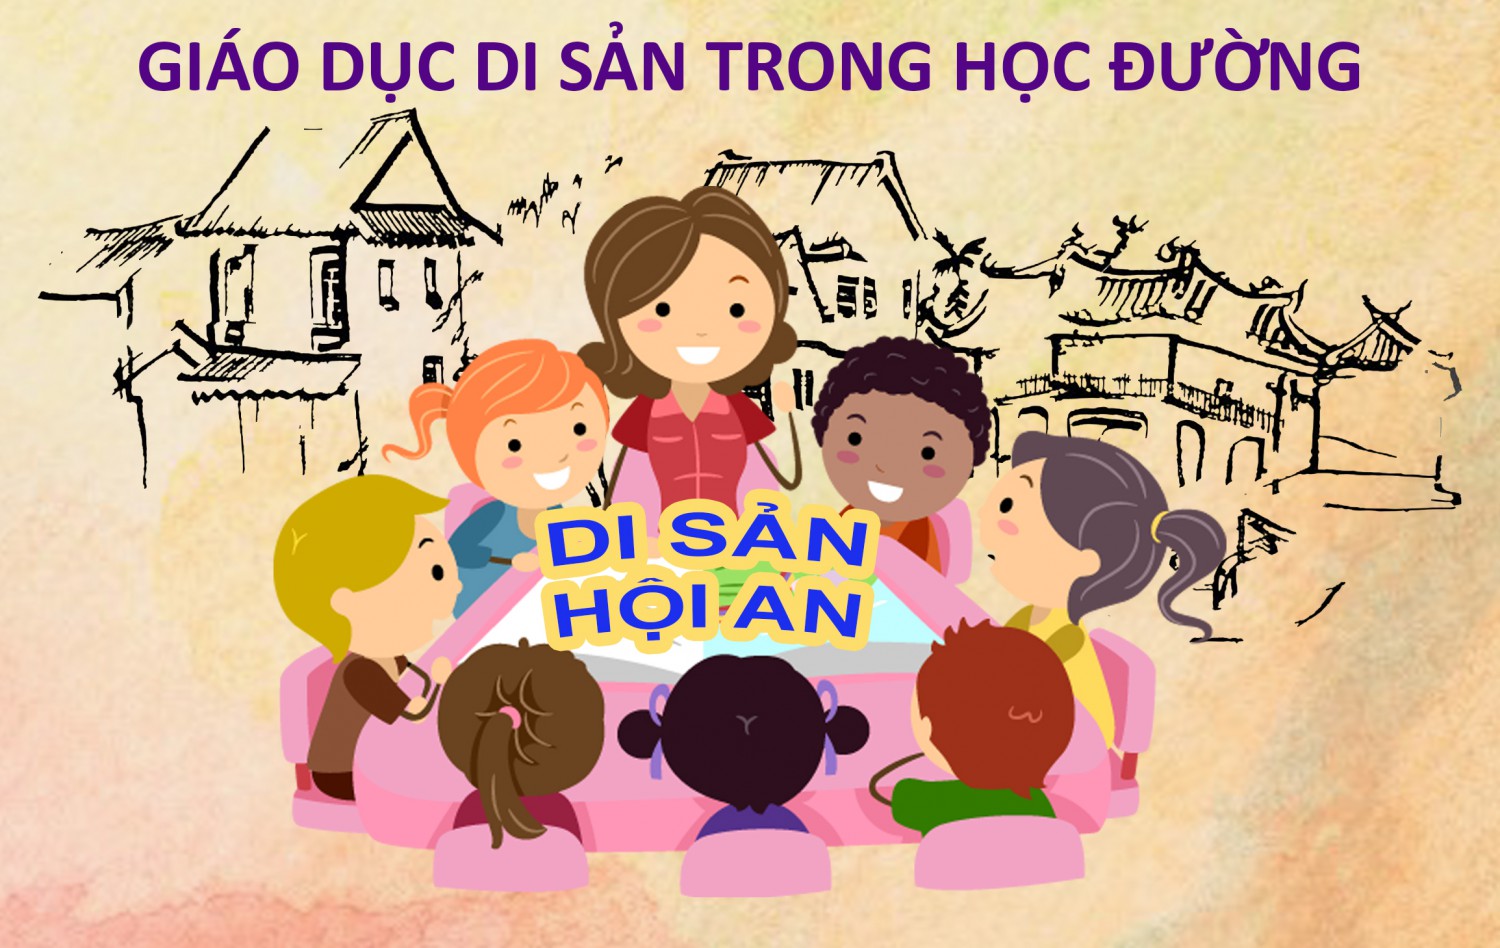 (Tiếng Việt) Thông qua bộ tài liệu giáo dục di sản trong học đường ở Hội An